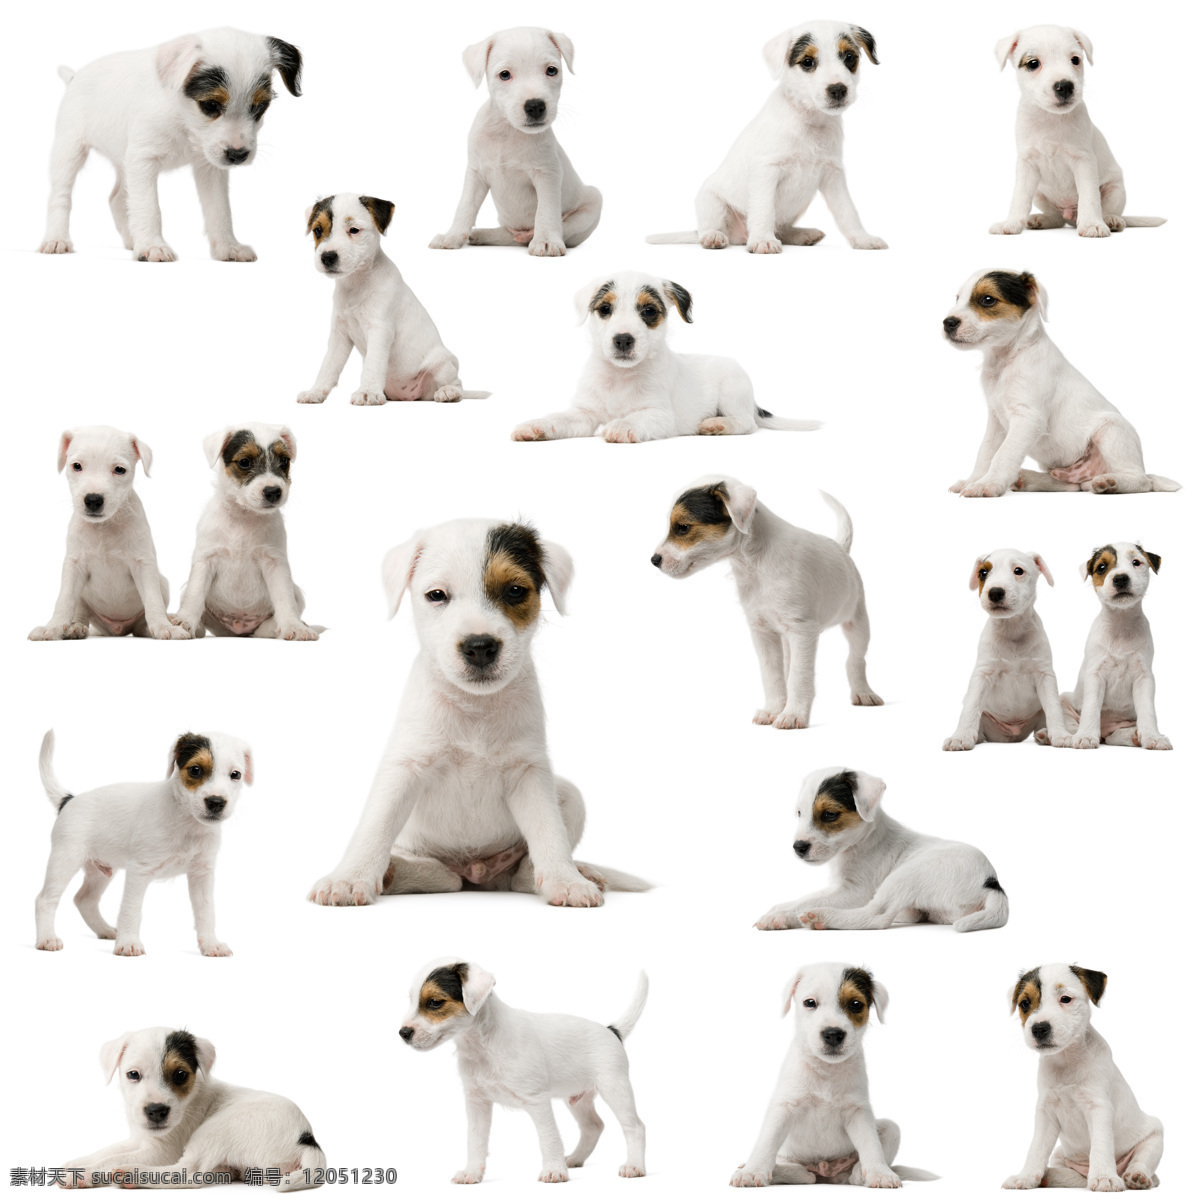 可爱 小狗 狗 大全 白色小狗 小狗写真 白色狗狗 高清图片 分辨率 尺寸 像素